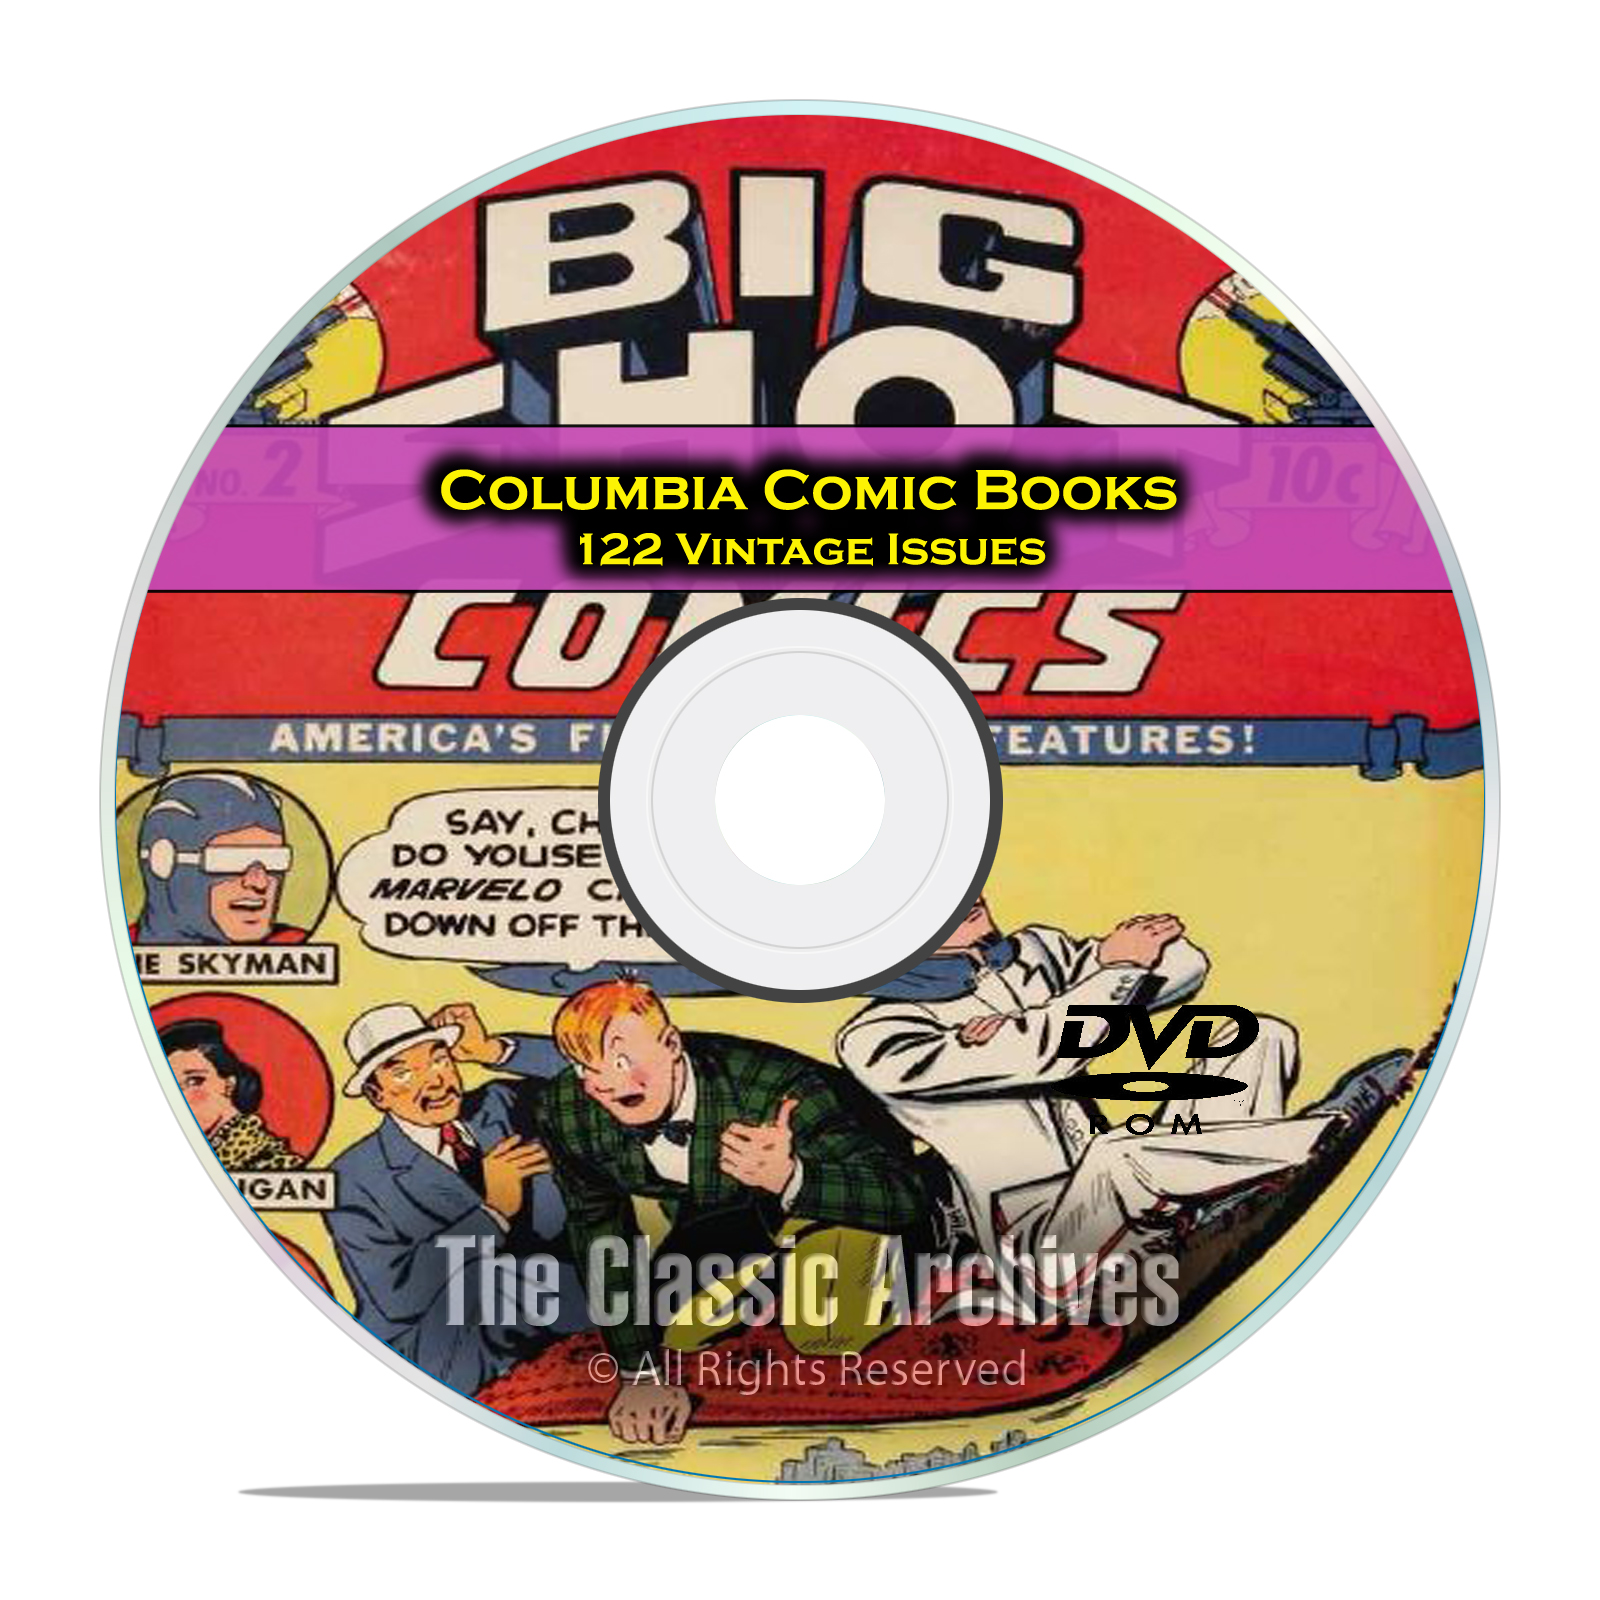 Columbia Comics, 122 Issues, Big Shot Comics, Sparky, Golden Age Comics DVD